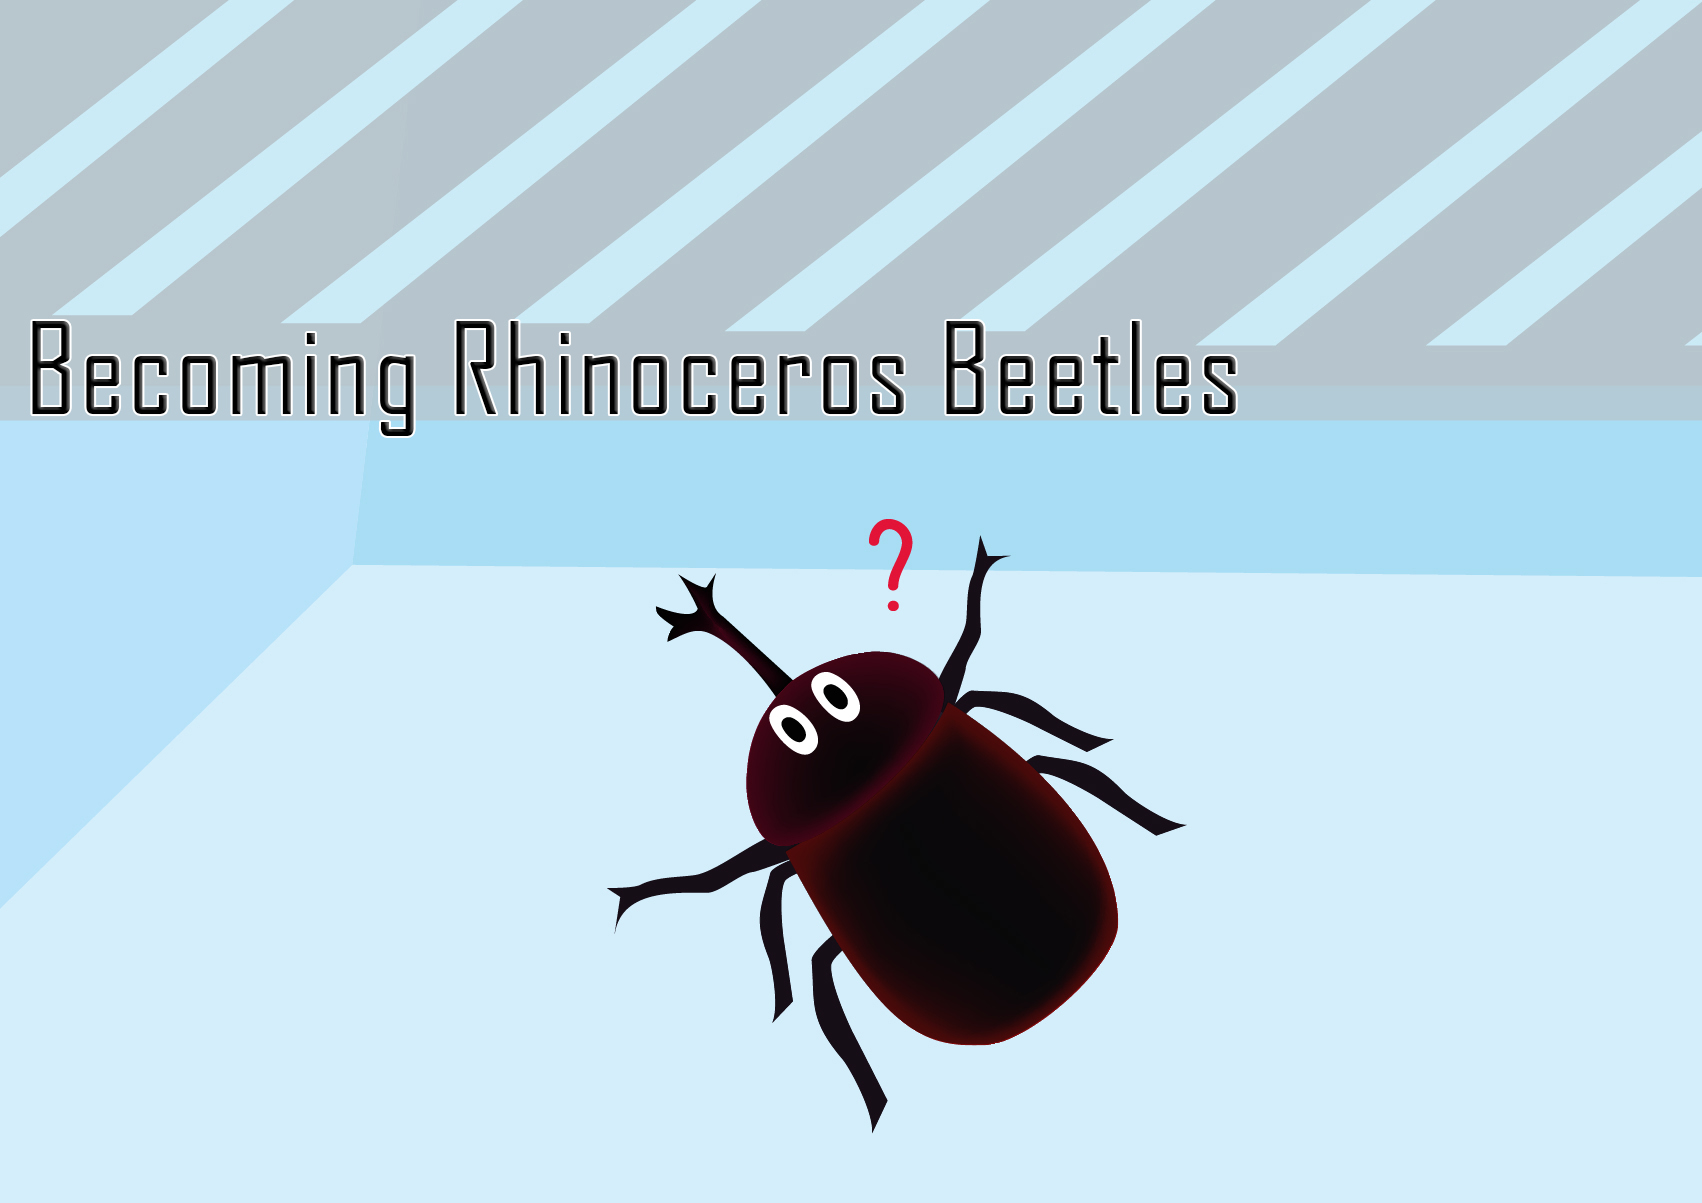 Becoming Rhinoceros Beetles